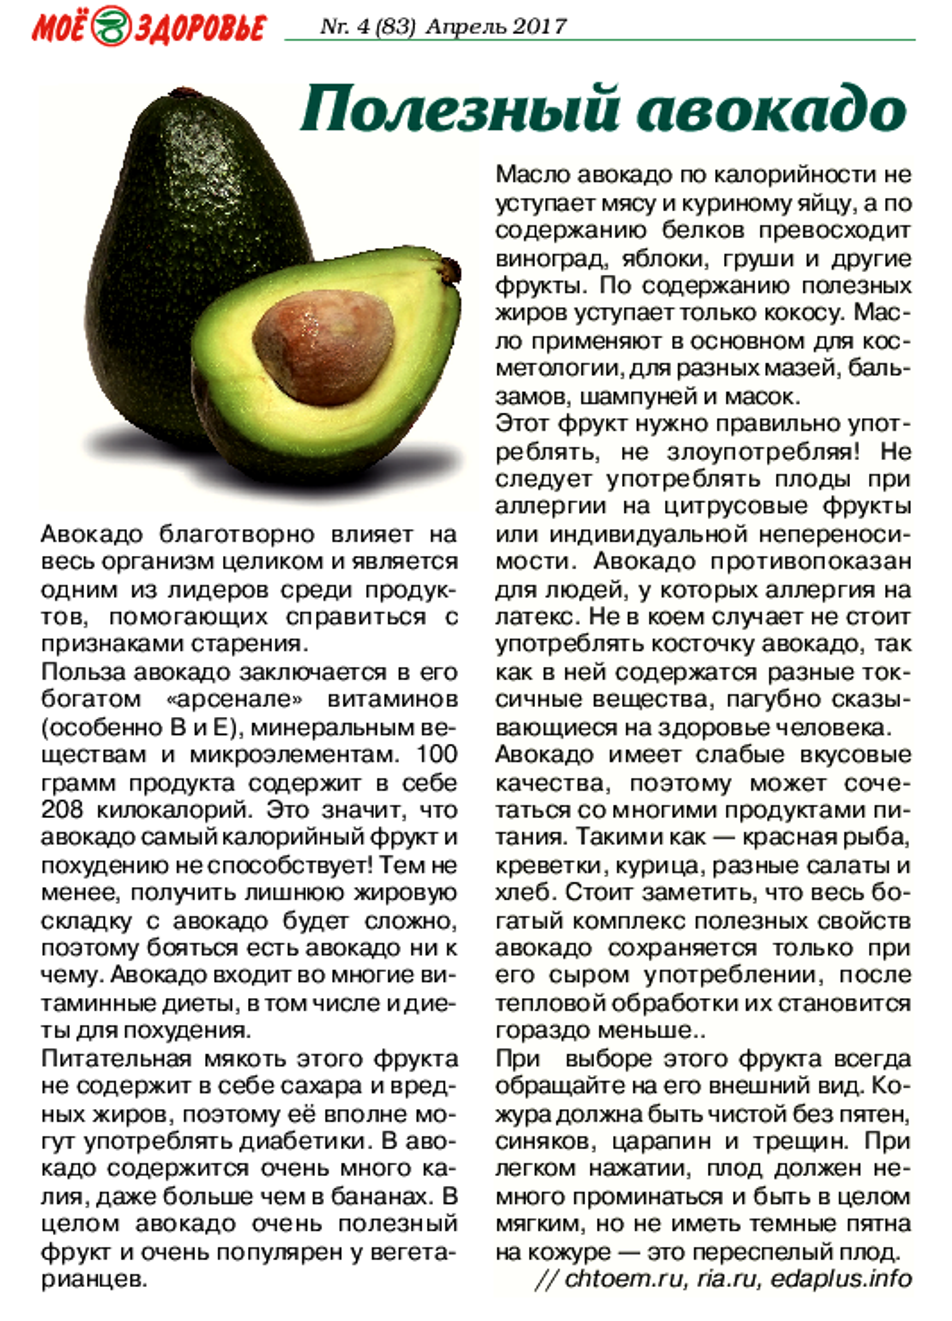 Масло авокадо: свойства и применение в кулинарии и косметологии